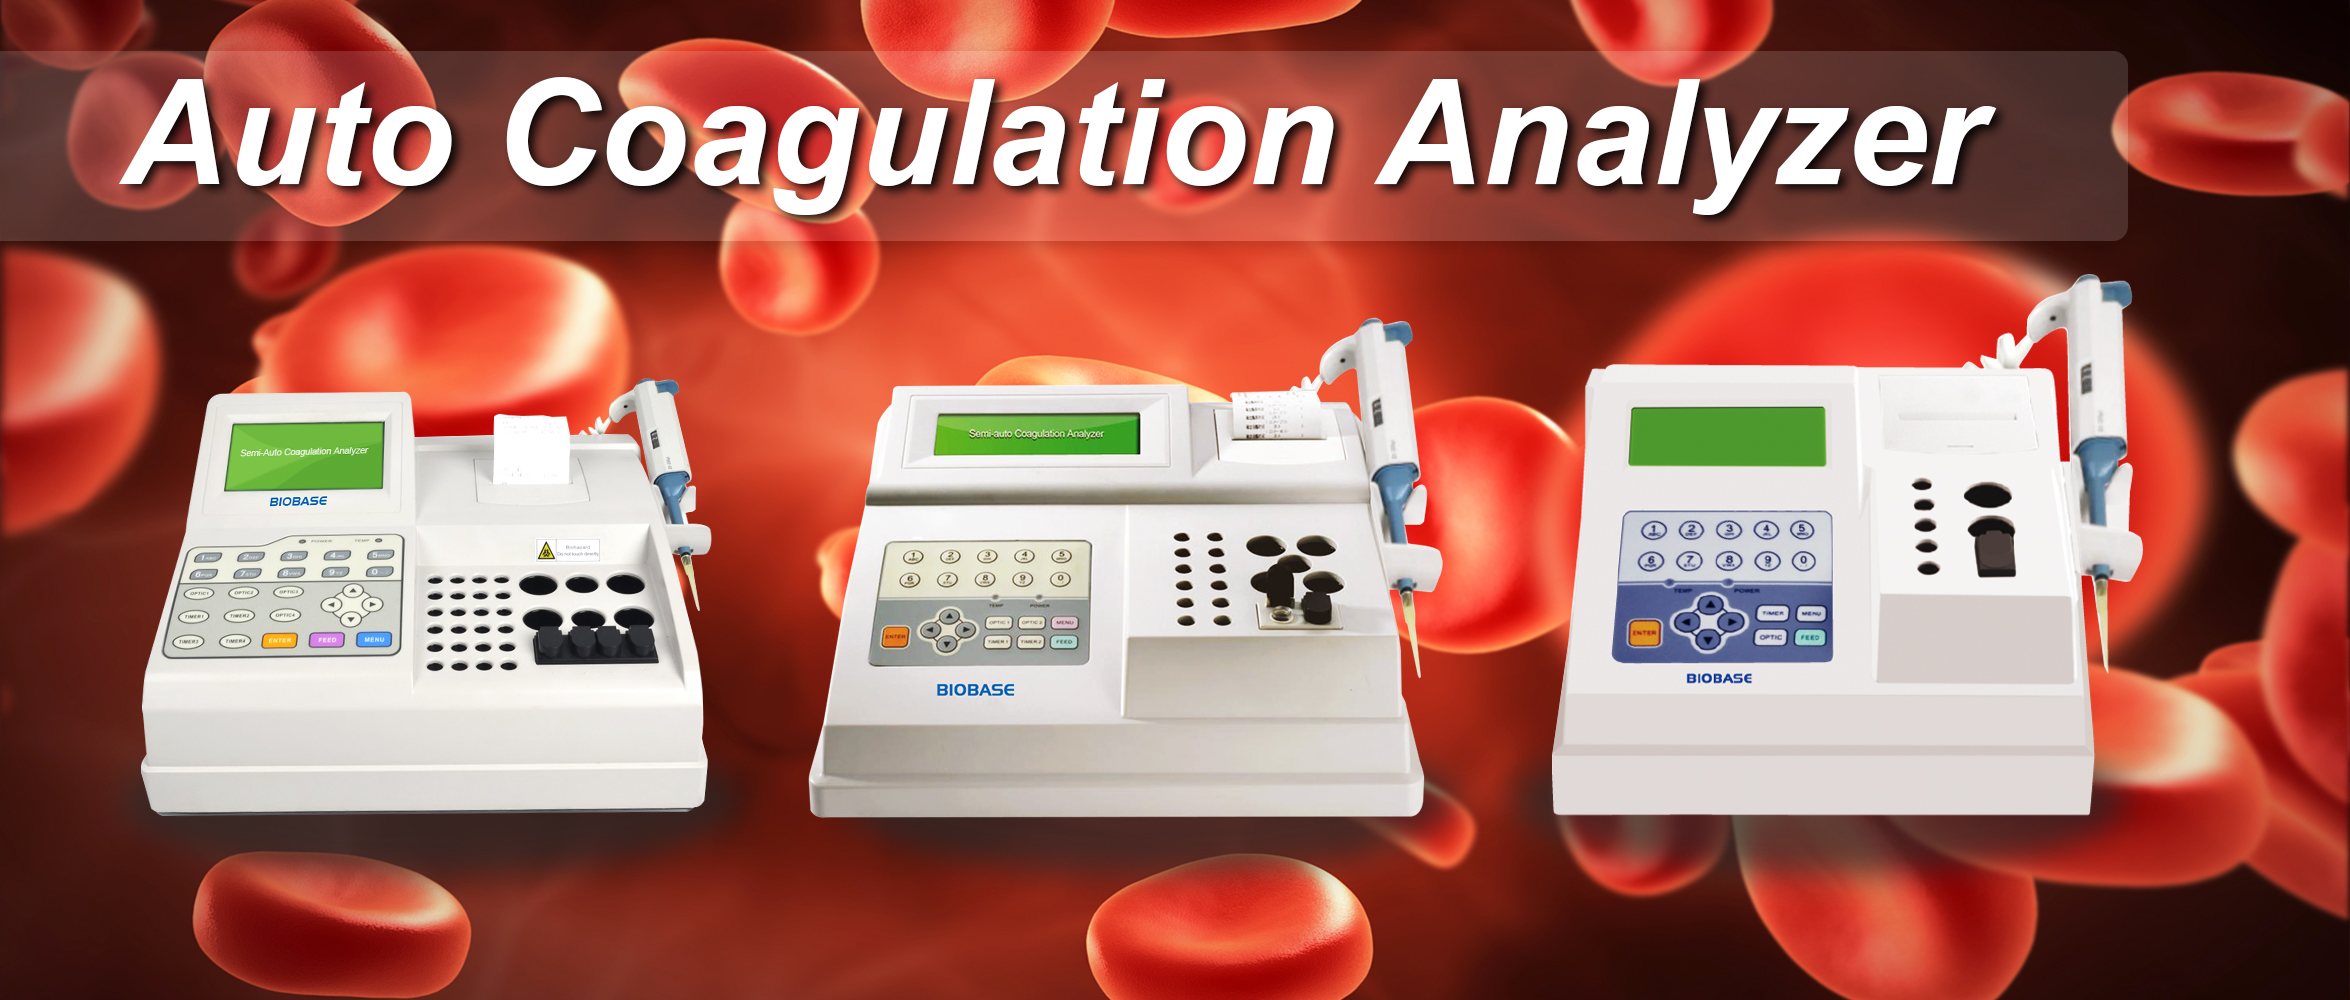 What is a Auto Coagulation Analyzer?